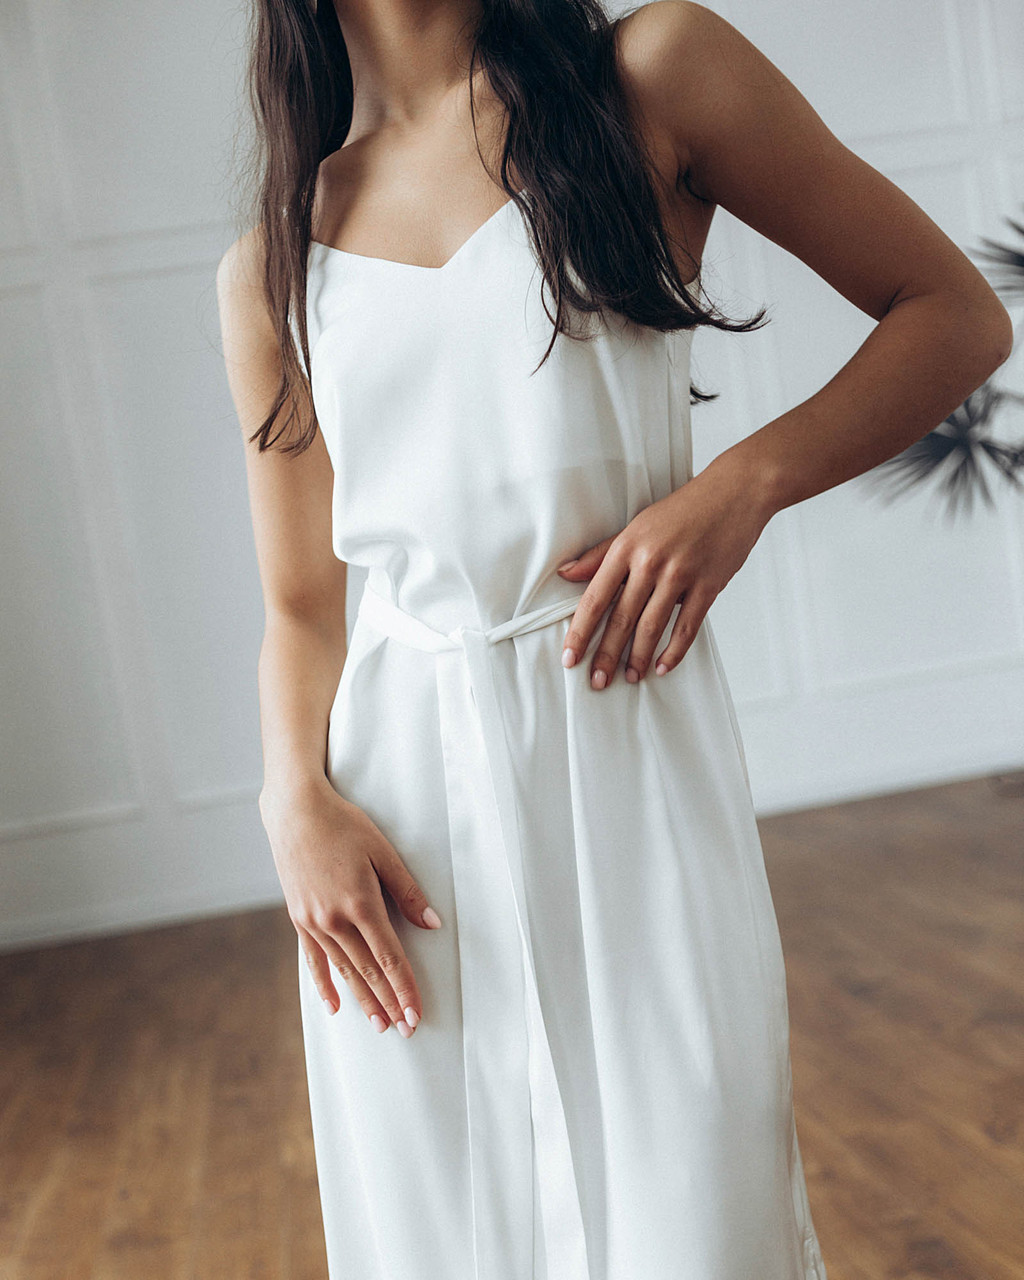 Шелковое платье женское длинное цвет молоко в бельевом стиле от бренда Тур, размеры: S, M, L TURWEAR - Фото 6